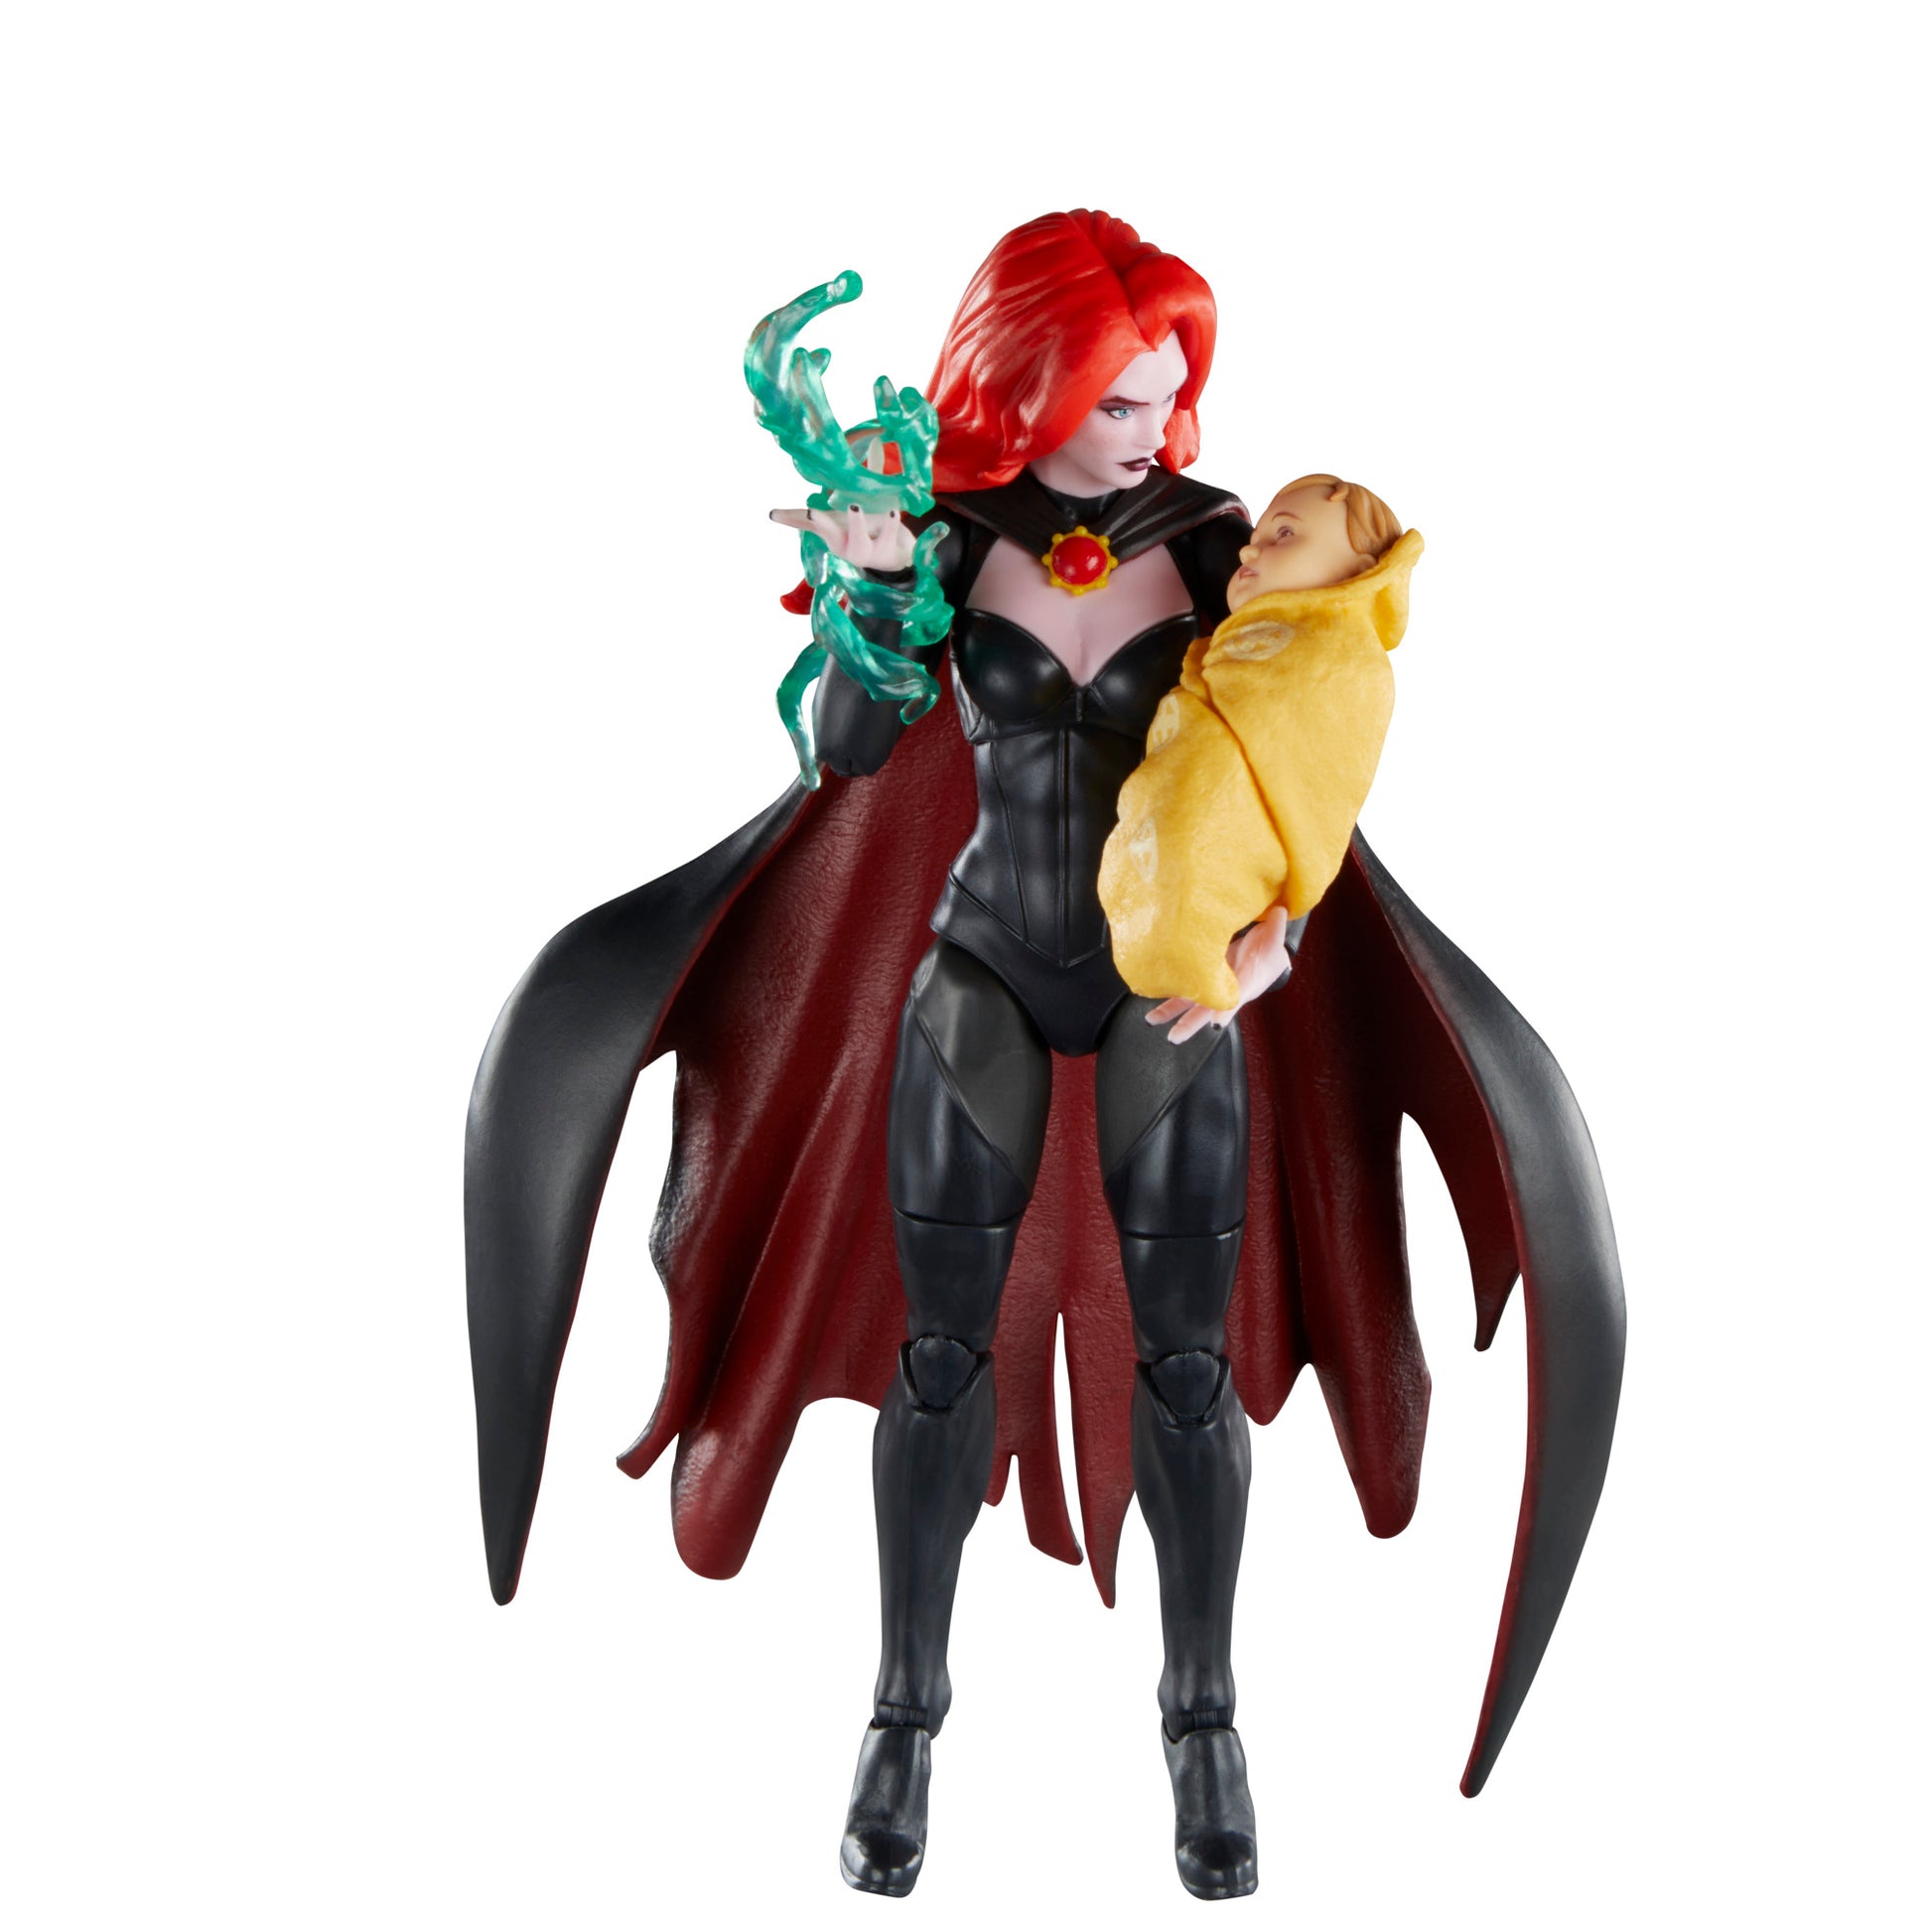 Marvel Legends Series Goblin Queen, X-Men ‘97 Collectible 6 Inch Action Figure